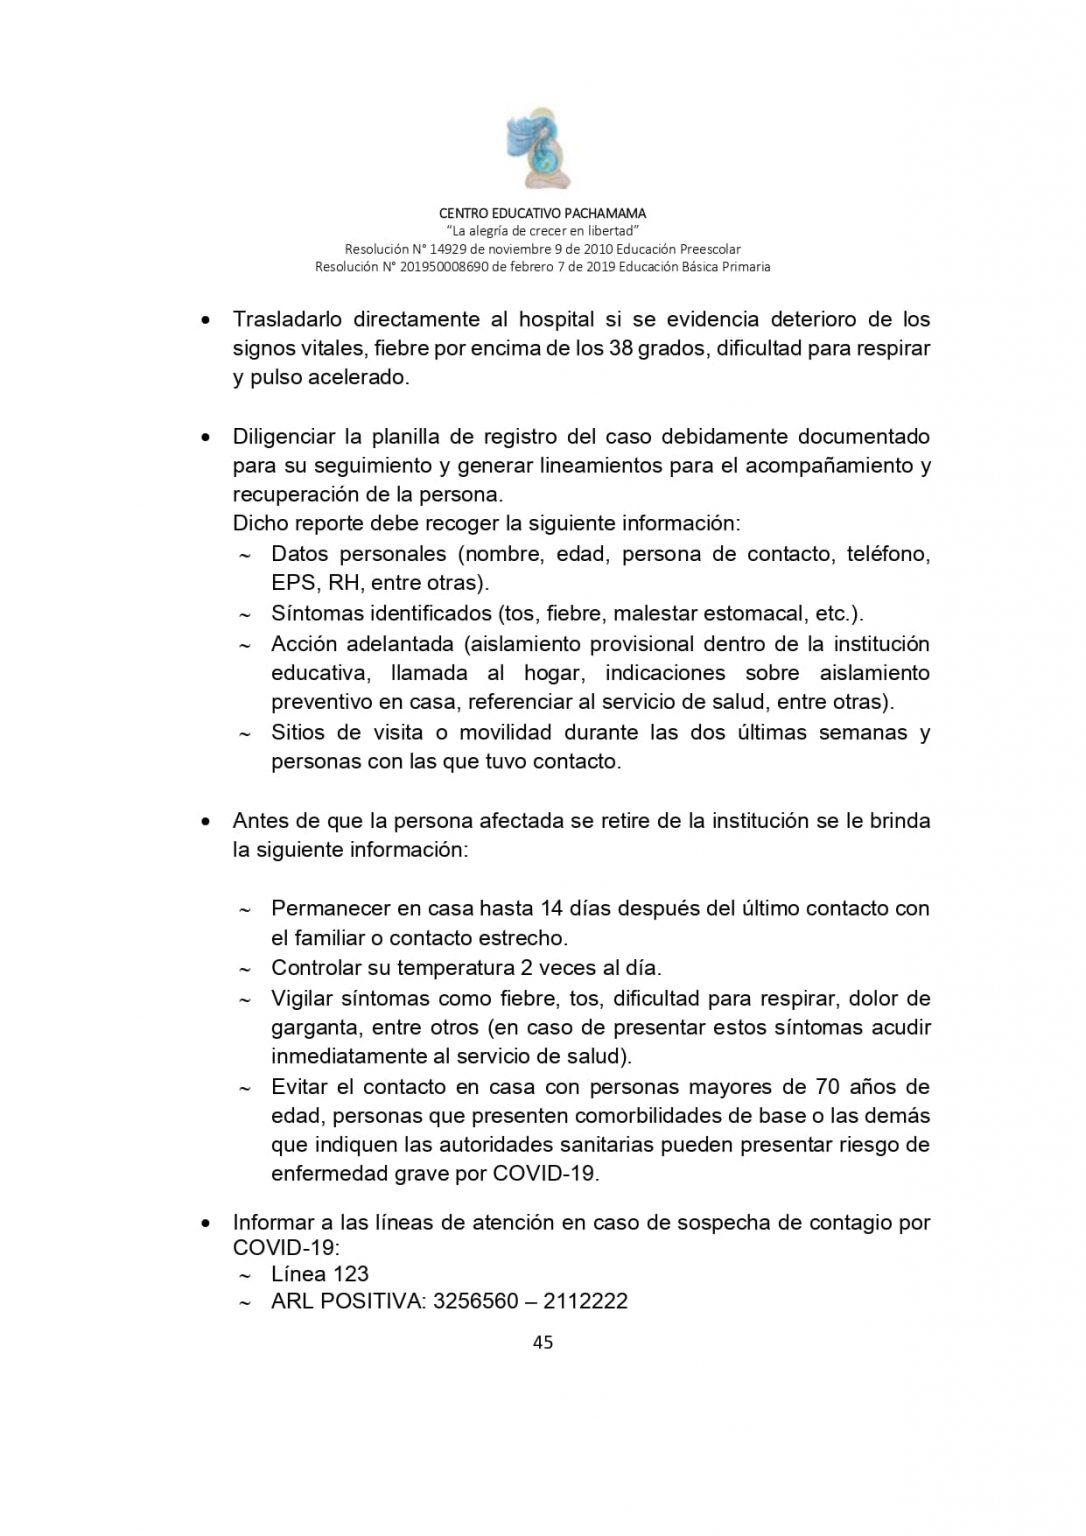 PROTOCOLO DE BIOSEGURIDAD PACHAMAMA Última Versión (3)-convertido_page-0045